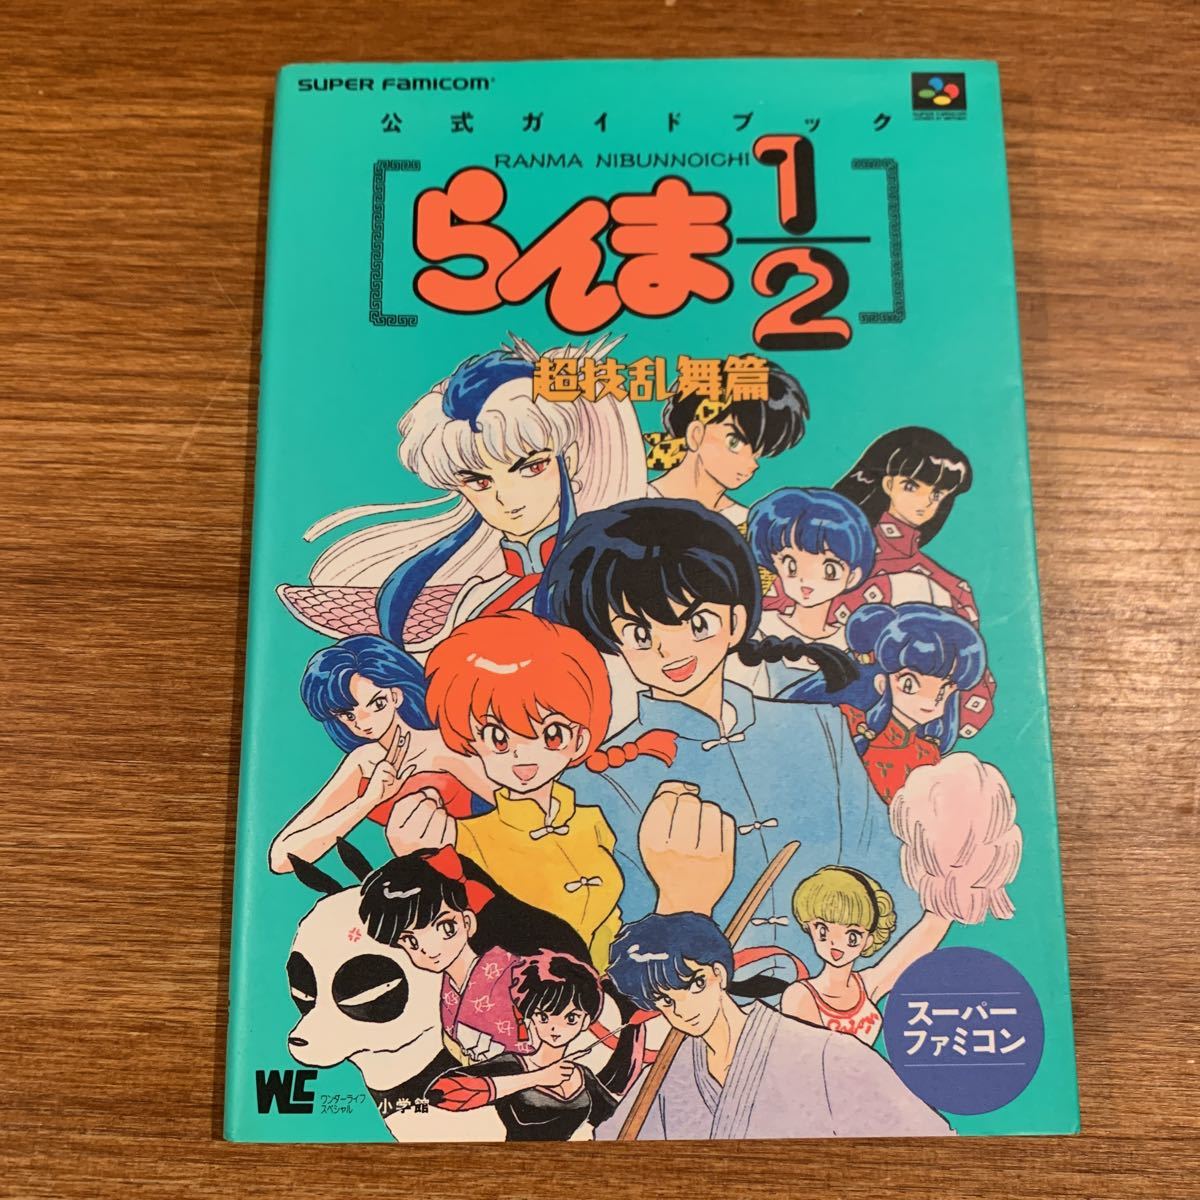  Ranma 1/2 супер .. Mai . официальный путеводитель SFC гид Super Famicom 